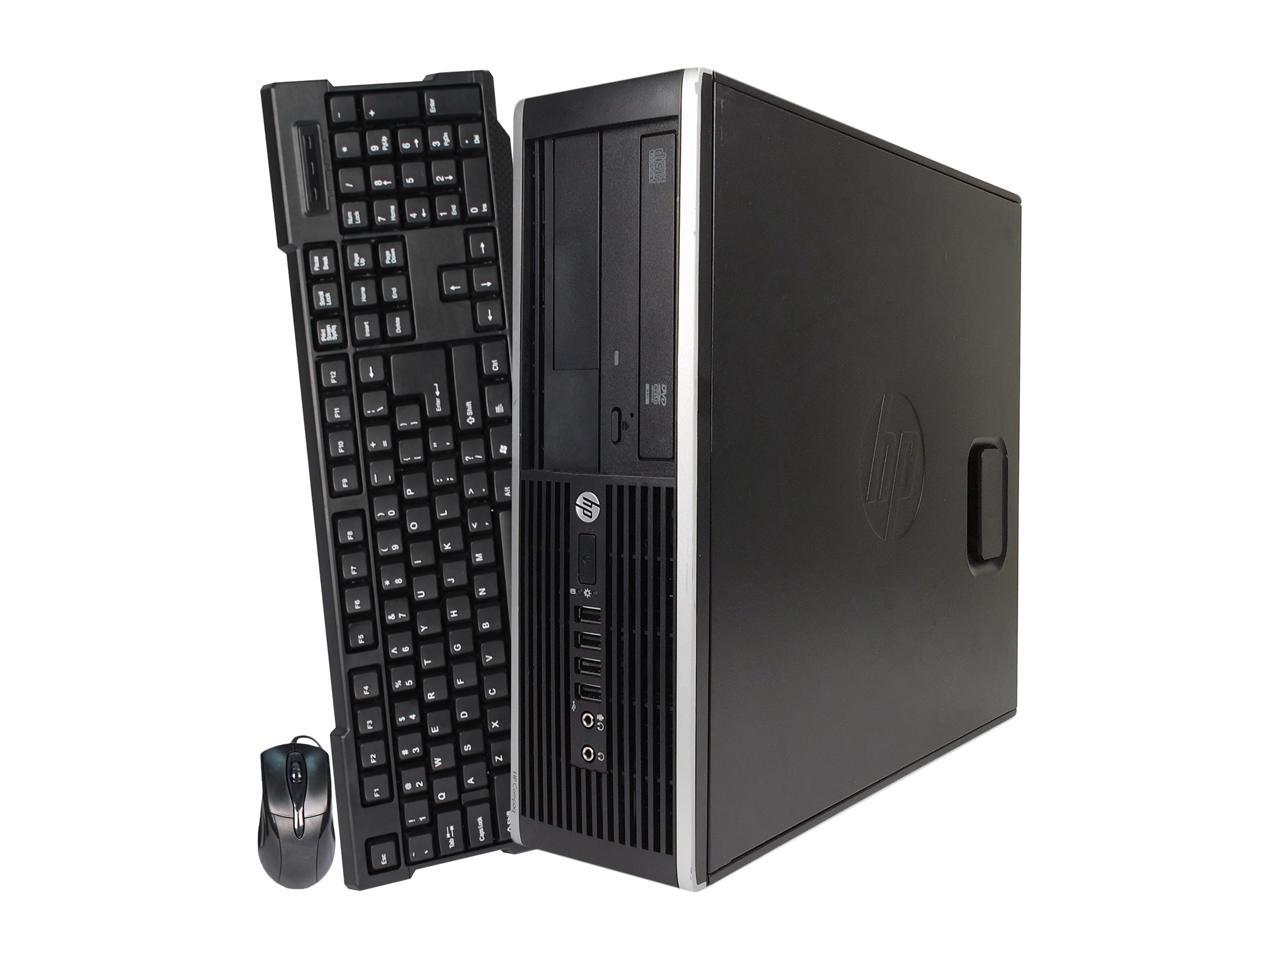 HP Desktop Computer Pro 6305 A4-Series APU A4-5300B (3.40 GHz) 8 GB DDR3 1 TB HDD Windows 7 Professional